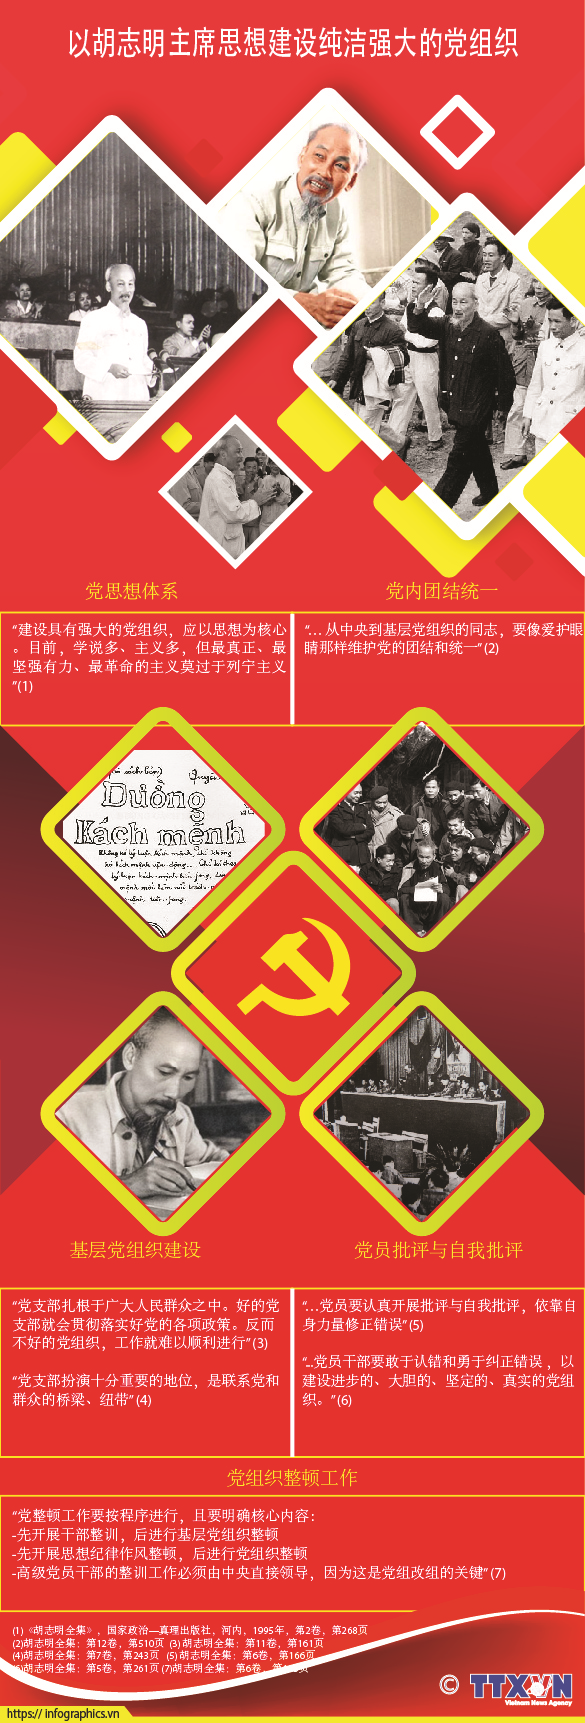 以胡志明主席思想建设春节强大的党组织